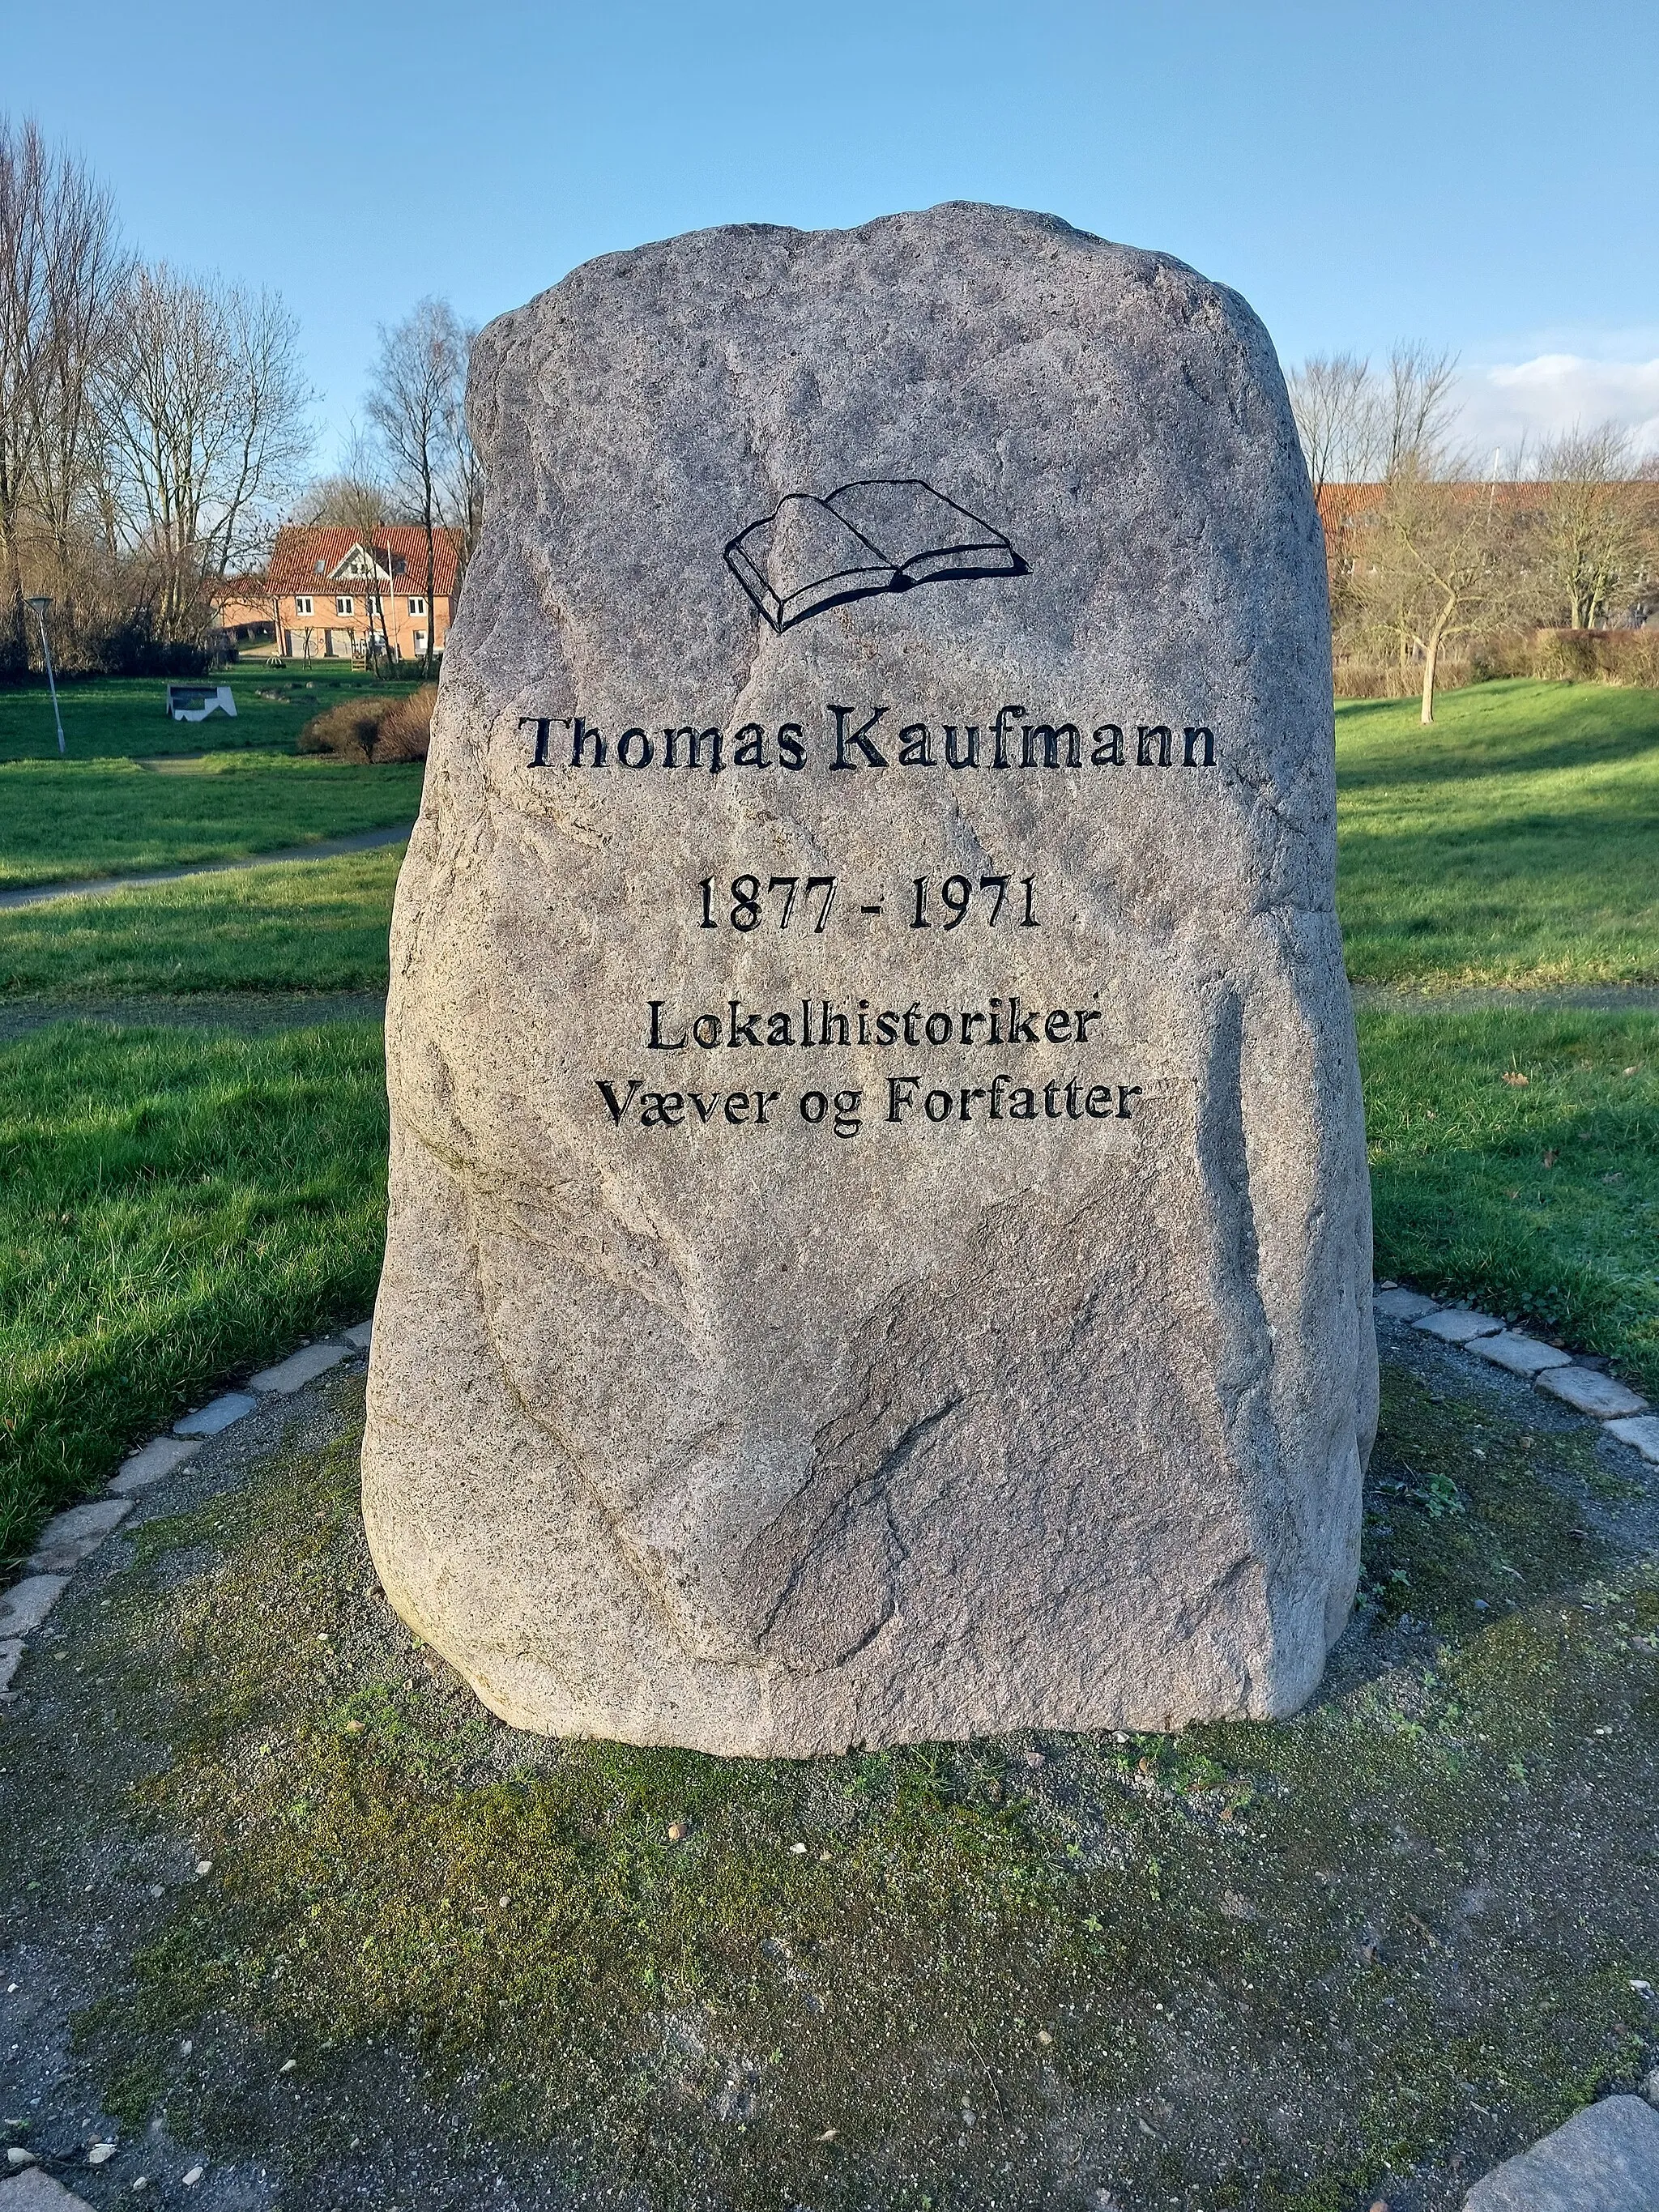 Photo showing: Mindesten for lokalhistorikeren og væveren Thomas Kaufmann (1877-1971) i parken i Bovrup